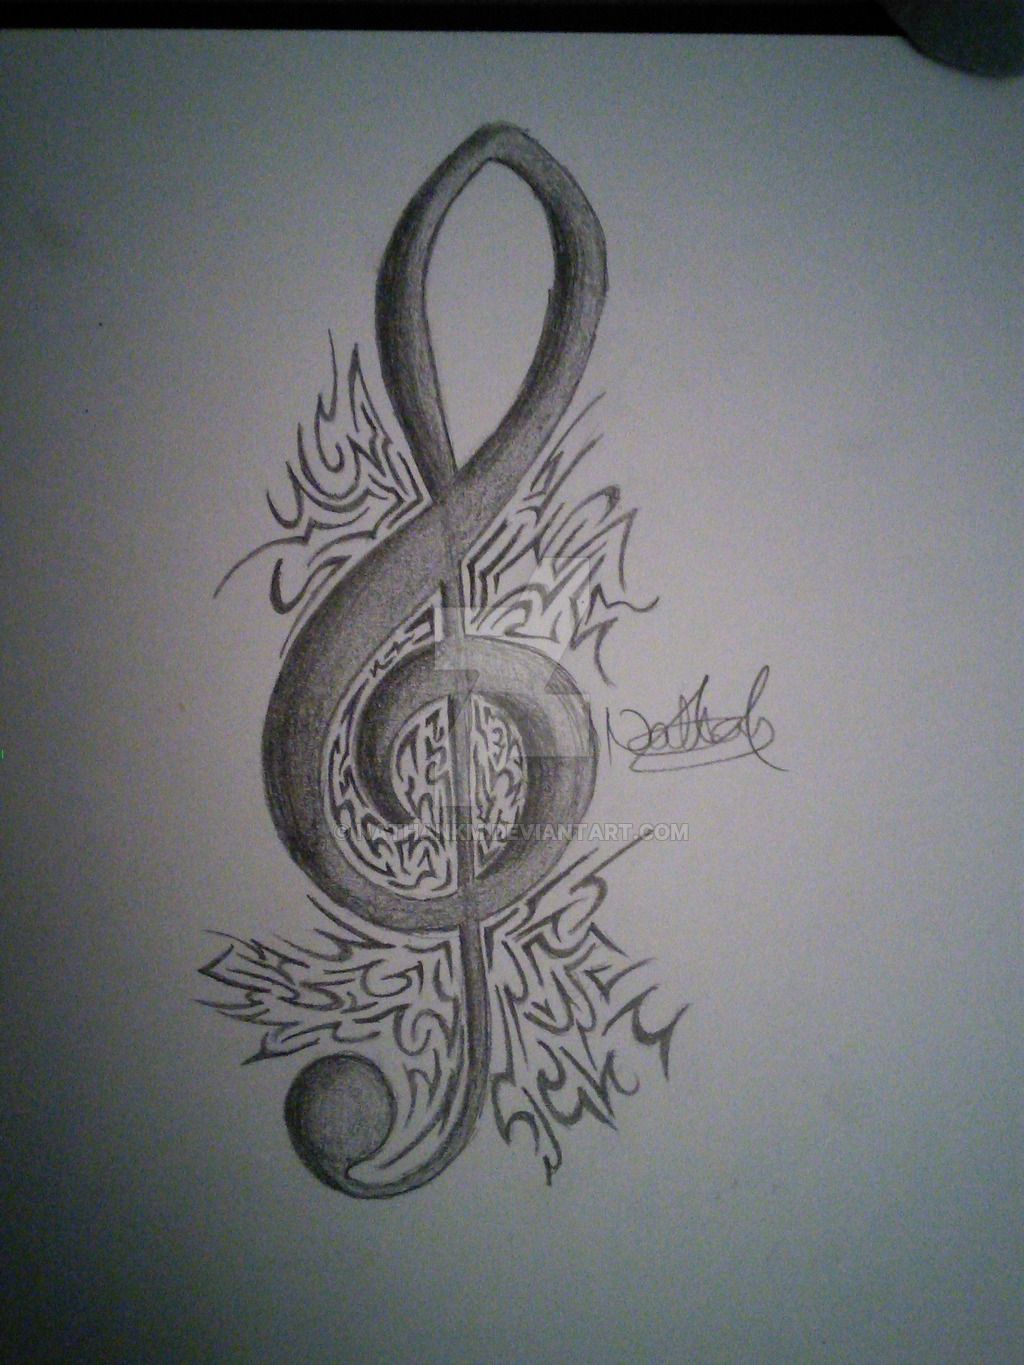 Tatuajes de notas musicales detrás del significado de la oreja (2)